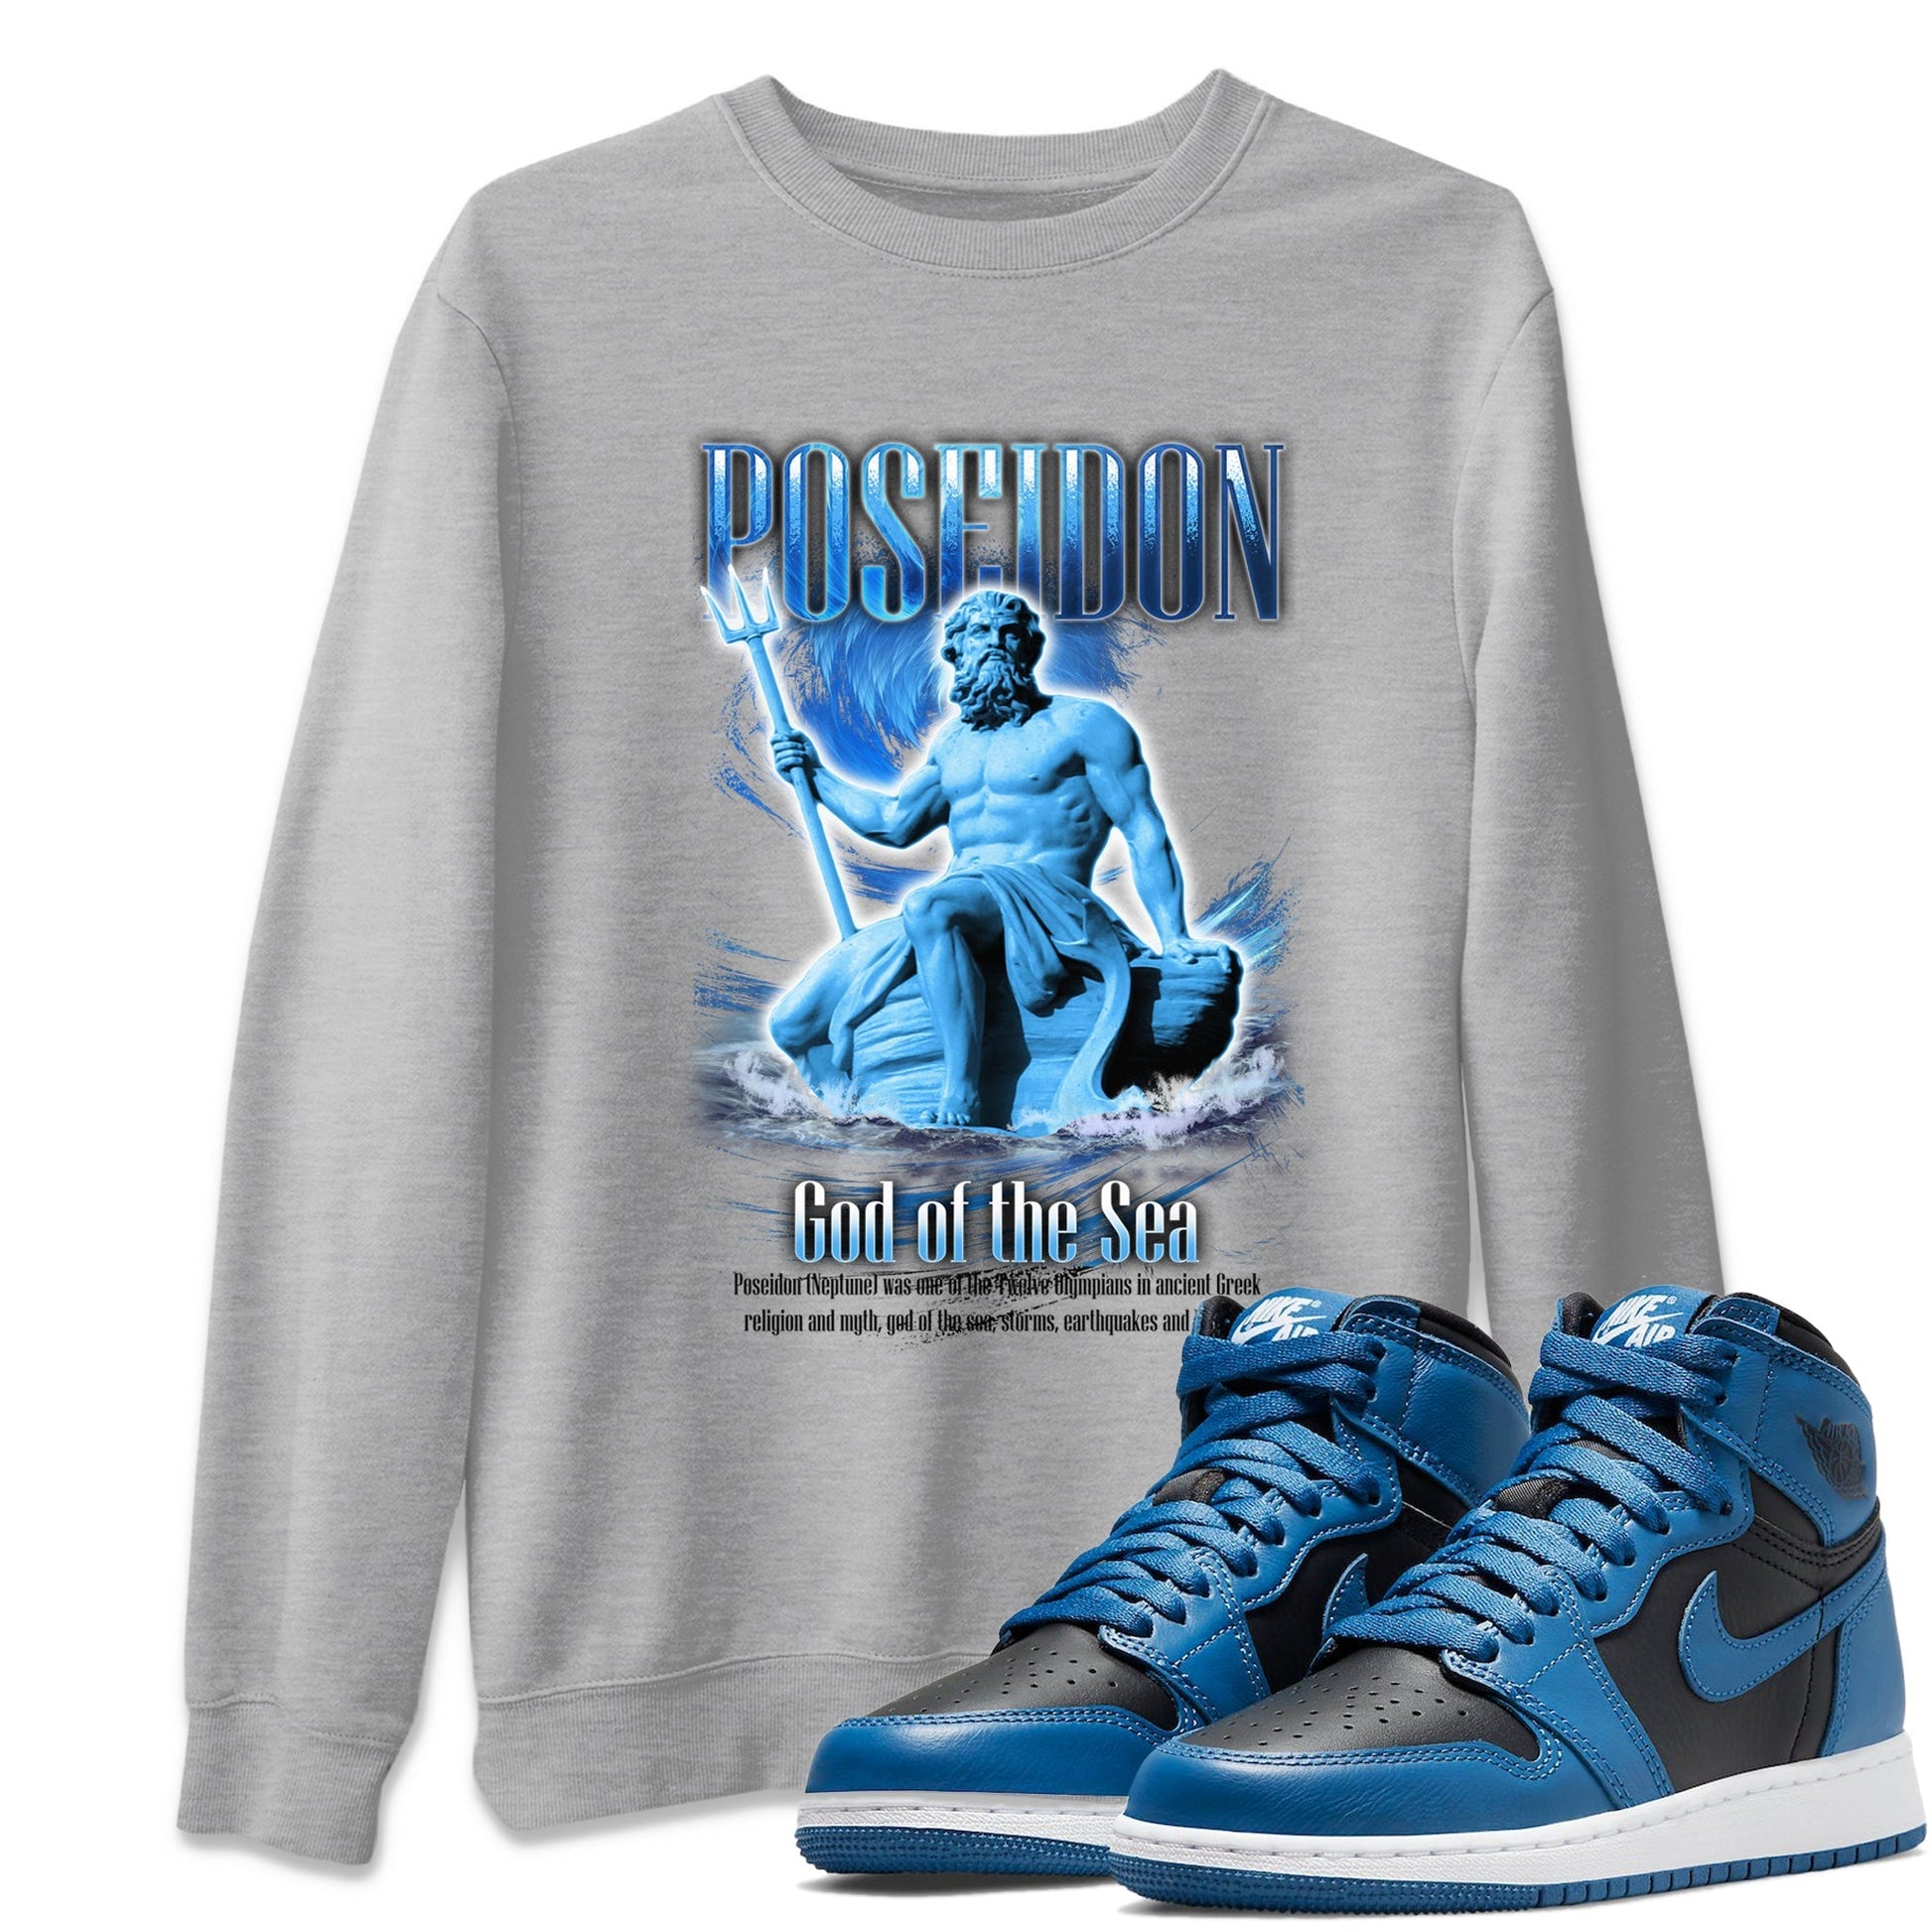 Jordan 1 Dark Marina Blue Sneaker Tees Drip Gear Zone Poseidon Sneaker Tees Jordan 1 Dark Marina Blue Shirt Unisex Shirts